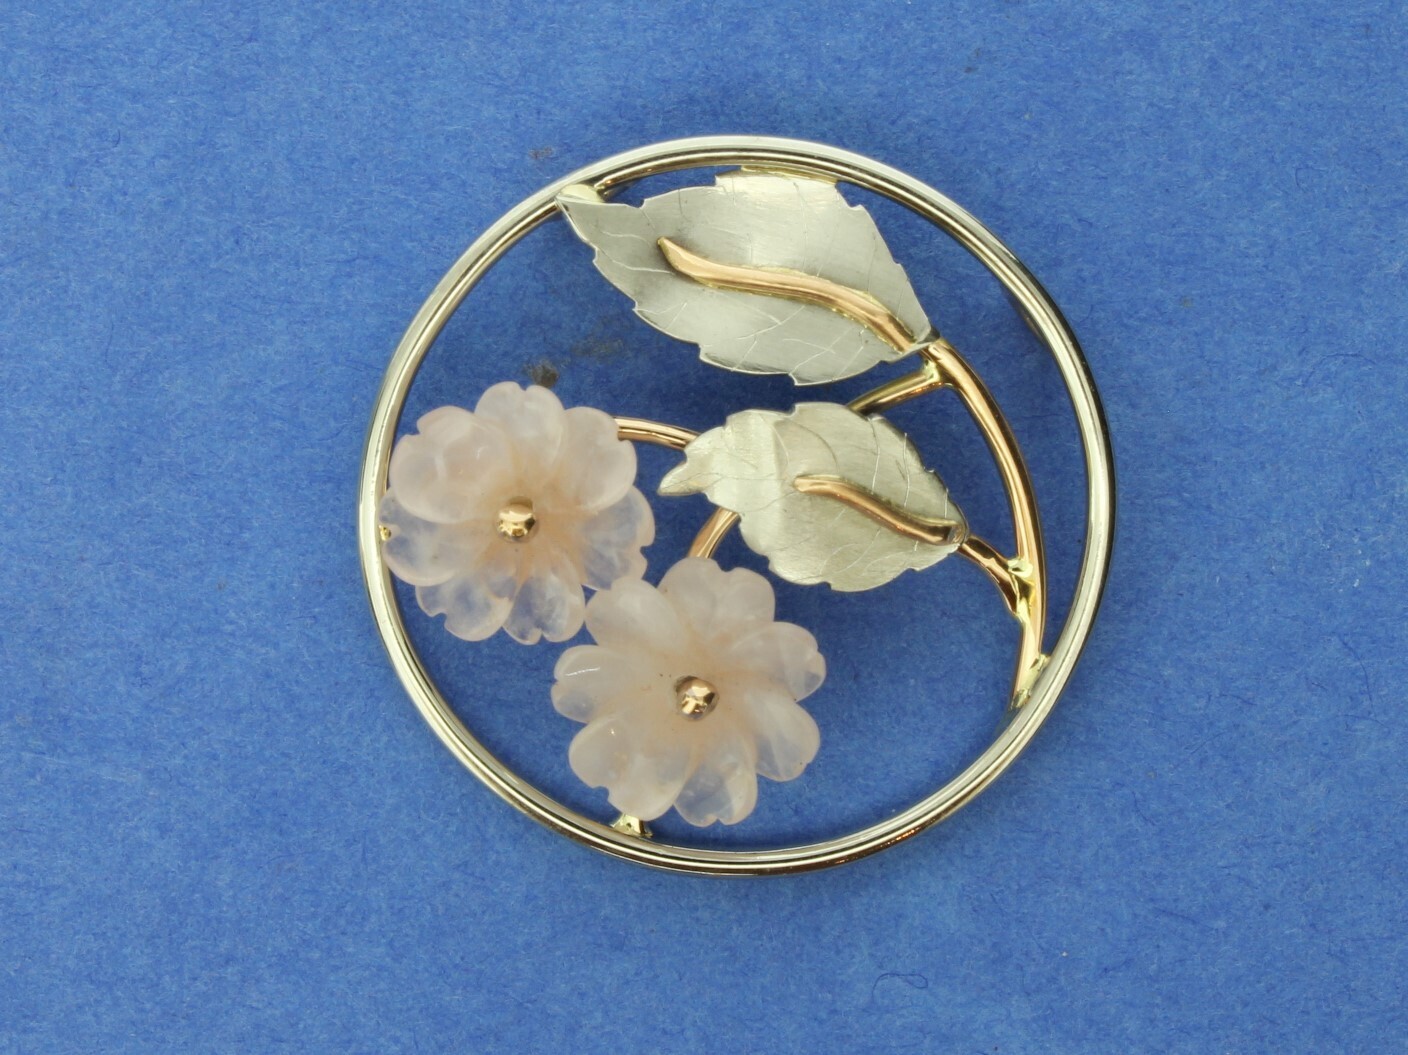 'Cherry Blossom' rose quartz, palladium & 18ct gold pendant